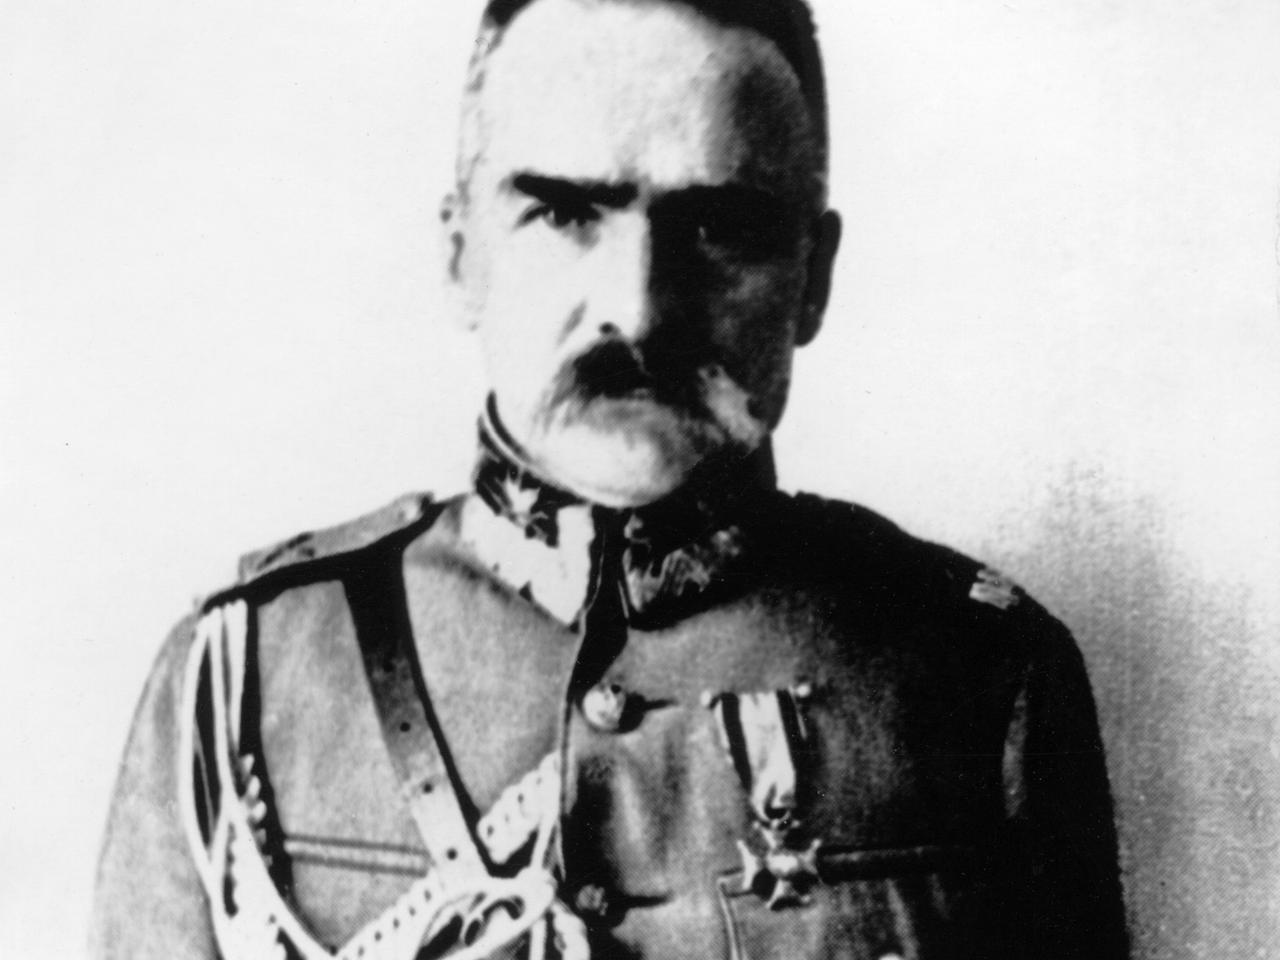 Wielki Test o Piłsudskim w TVP1